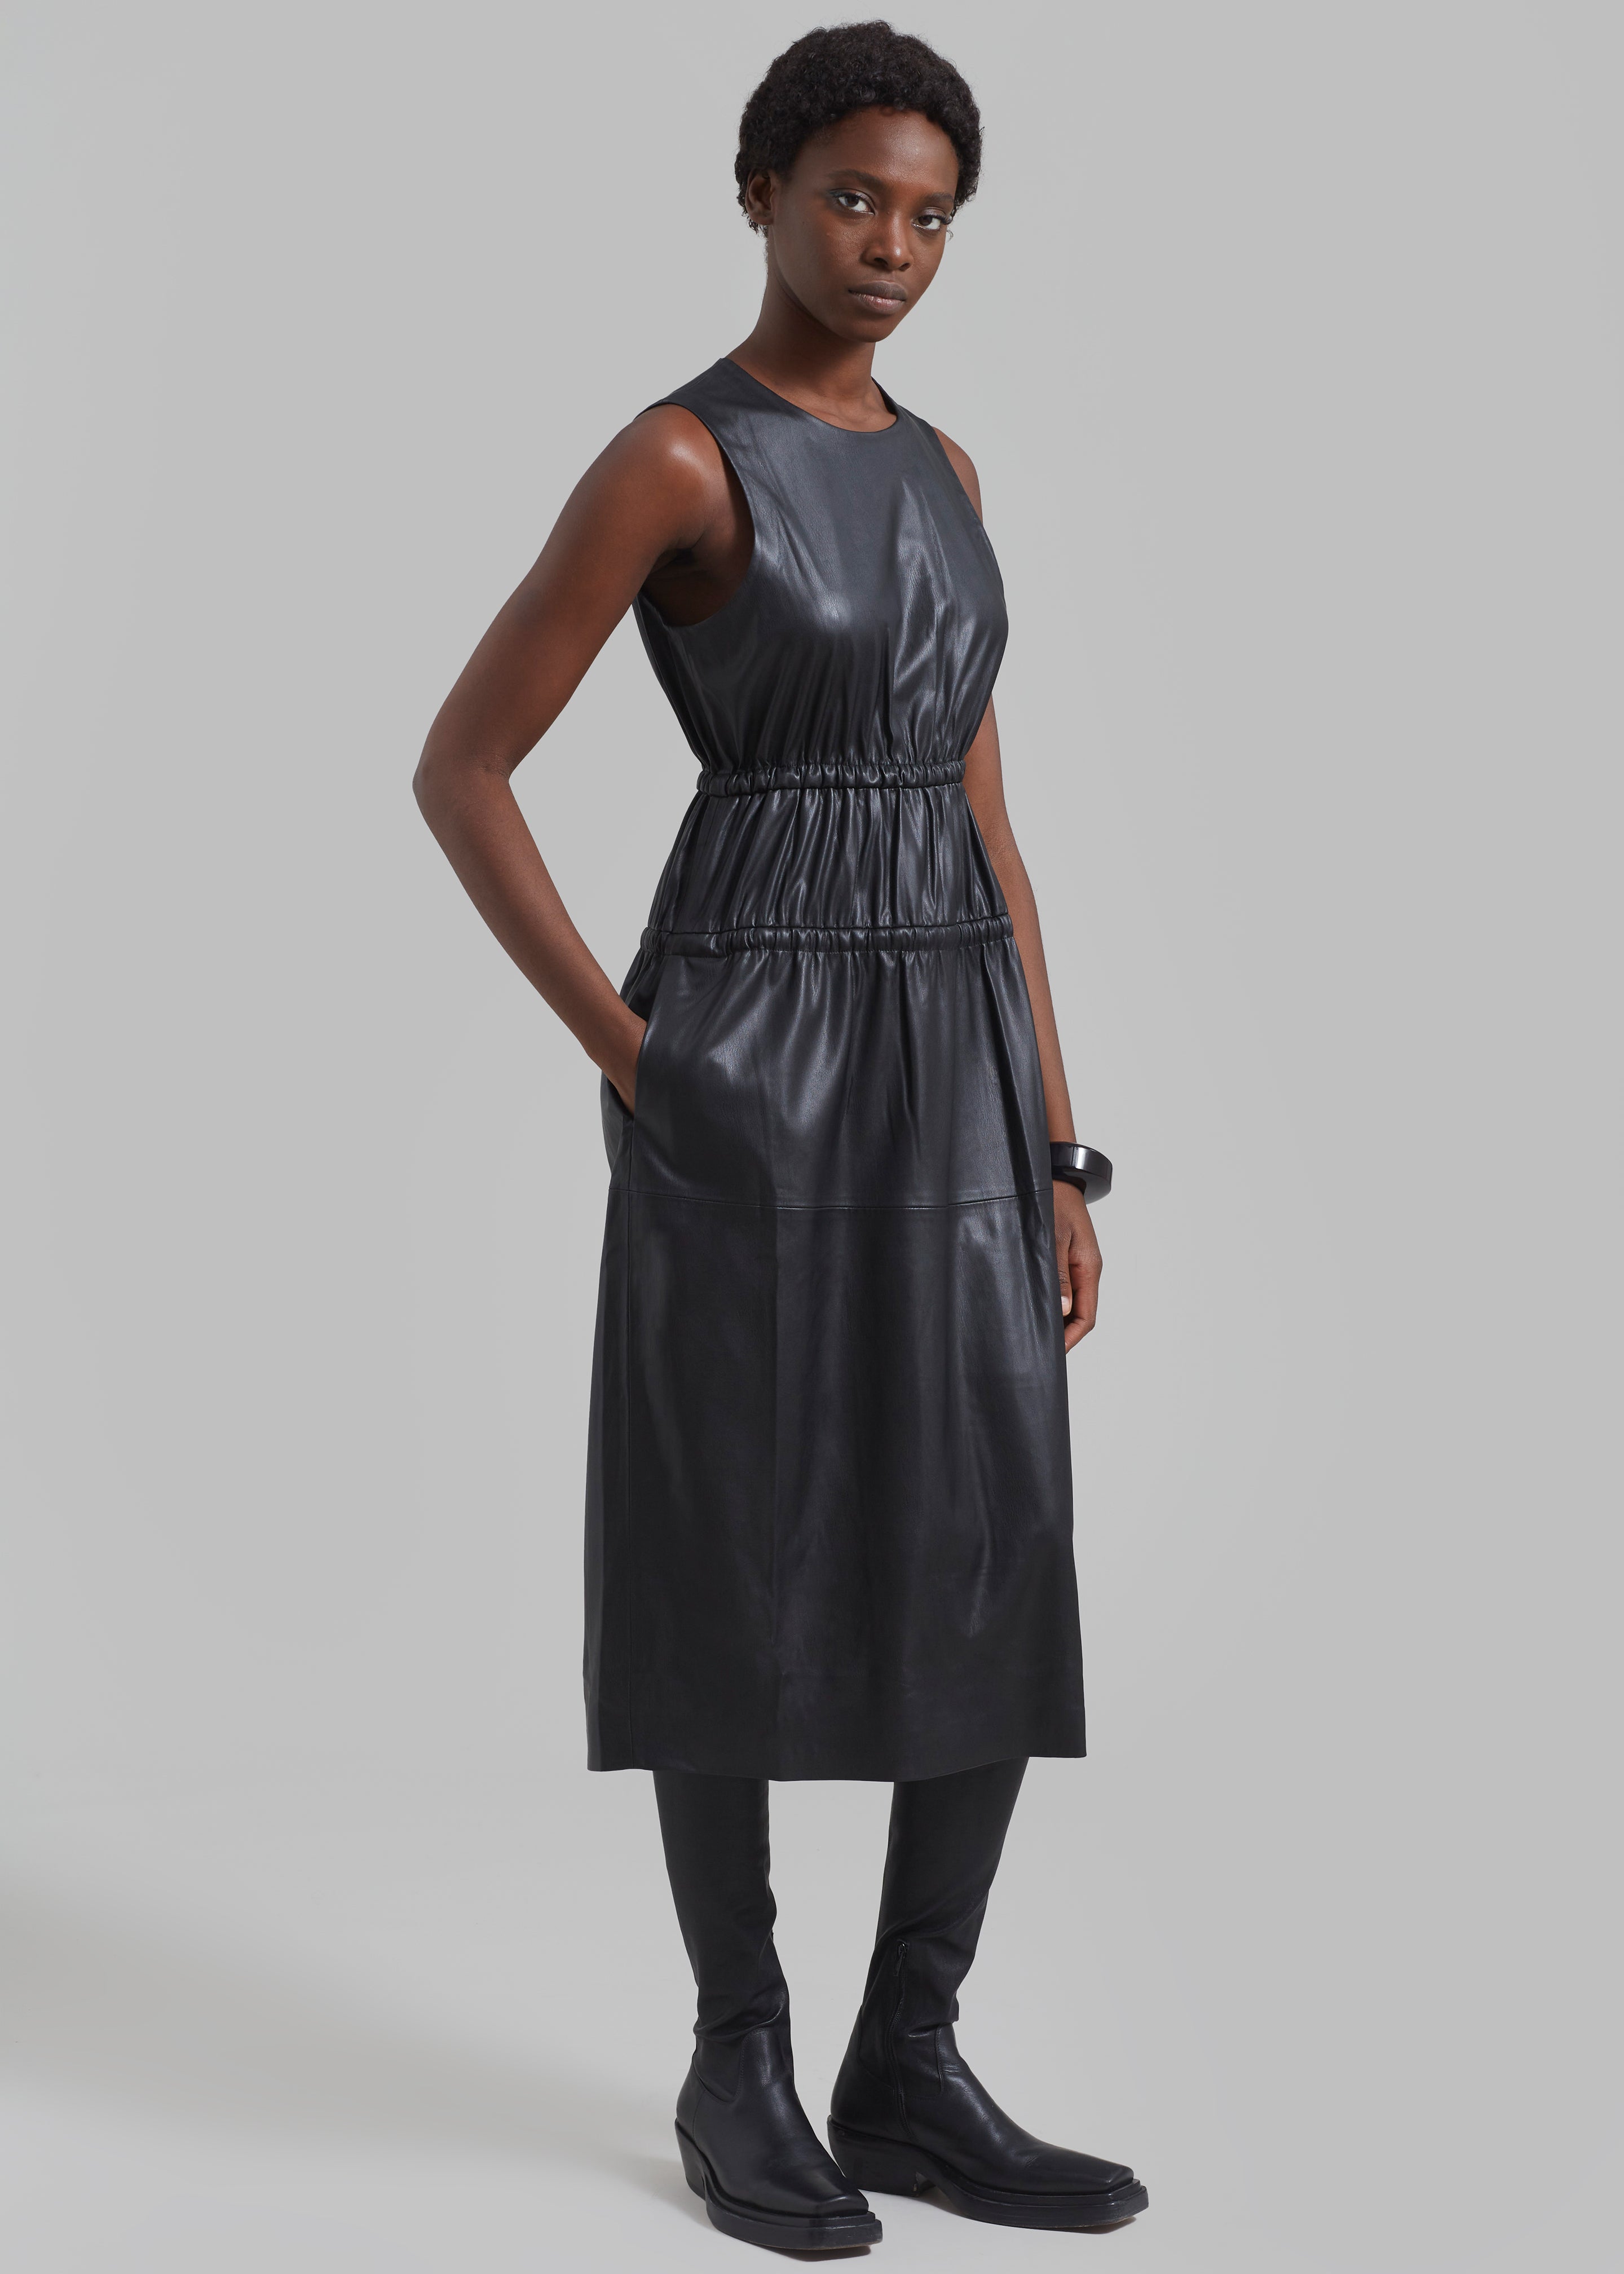 Proenza Schouler White Label Faux Leather Drawstring Dress - Black - 3